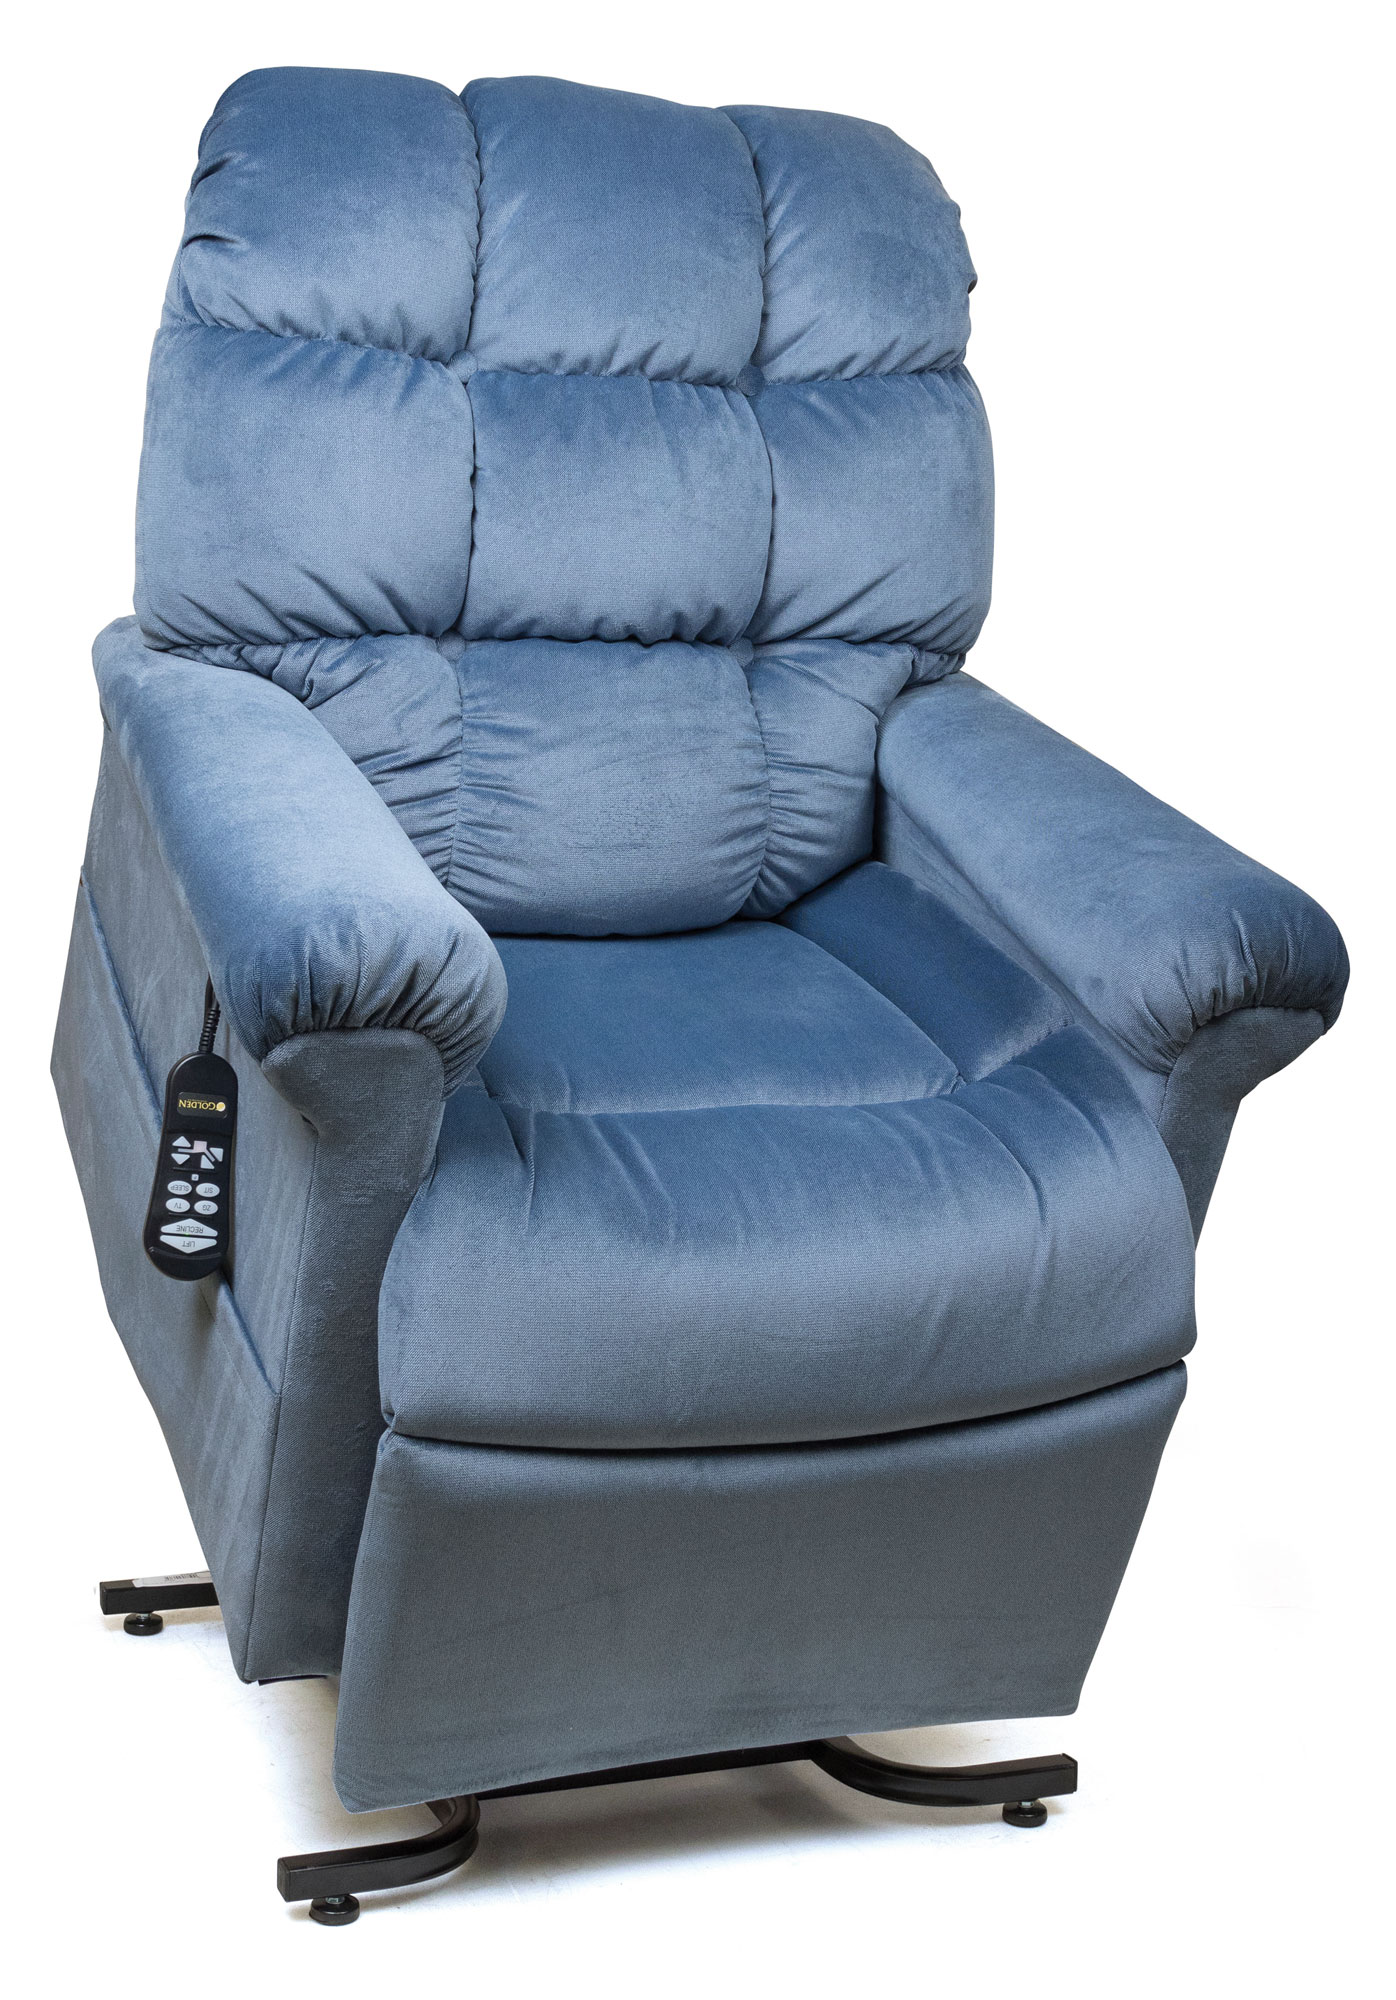 Cloud Lift Chair Recliner Golden Technologies Heat Massage